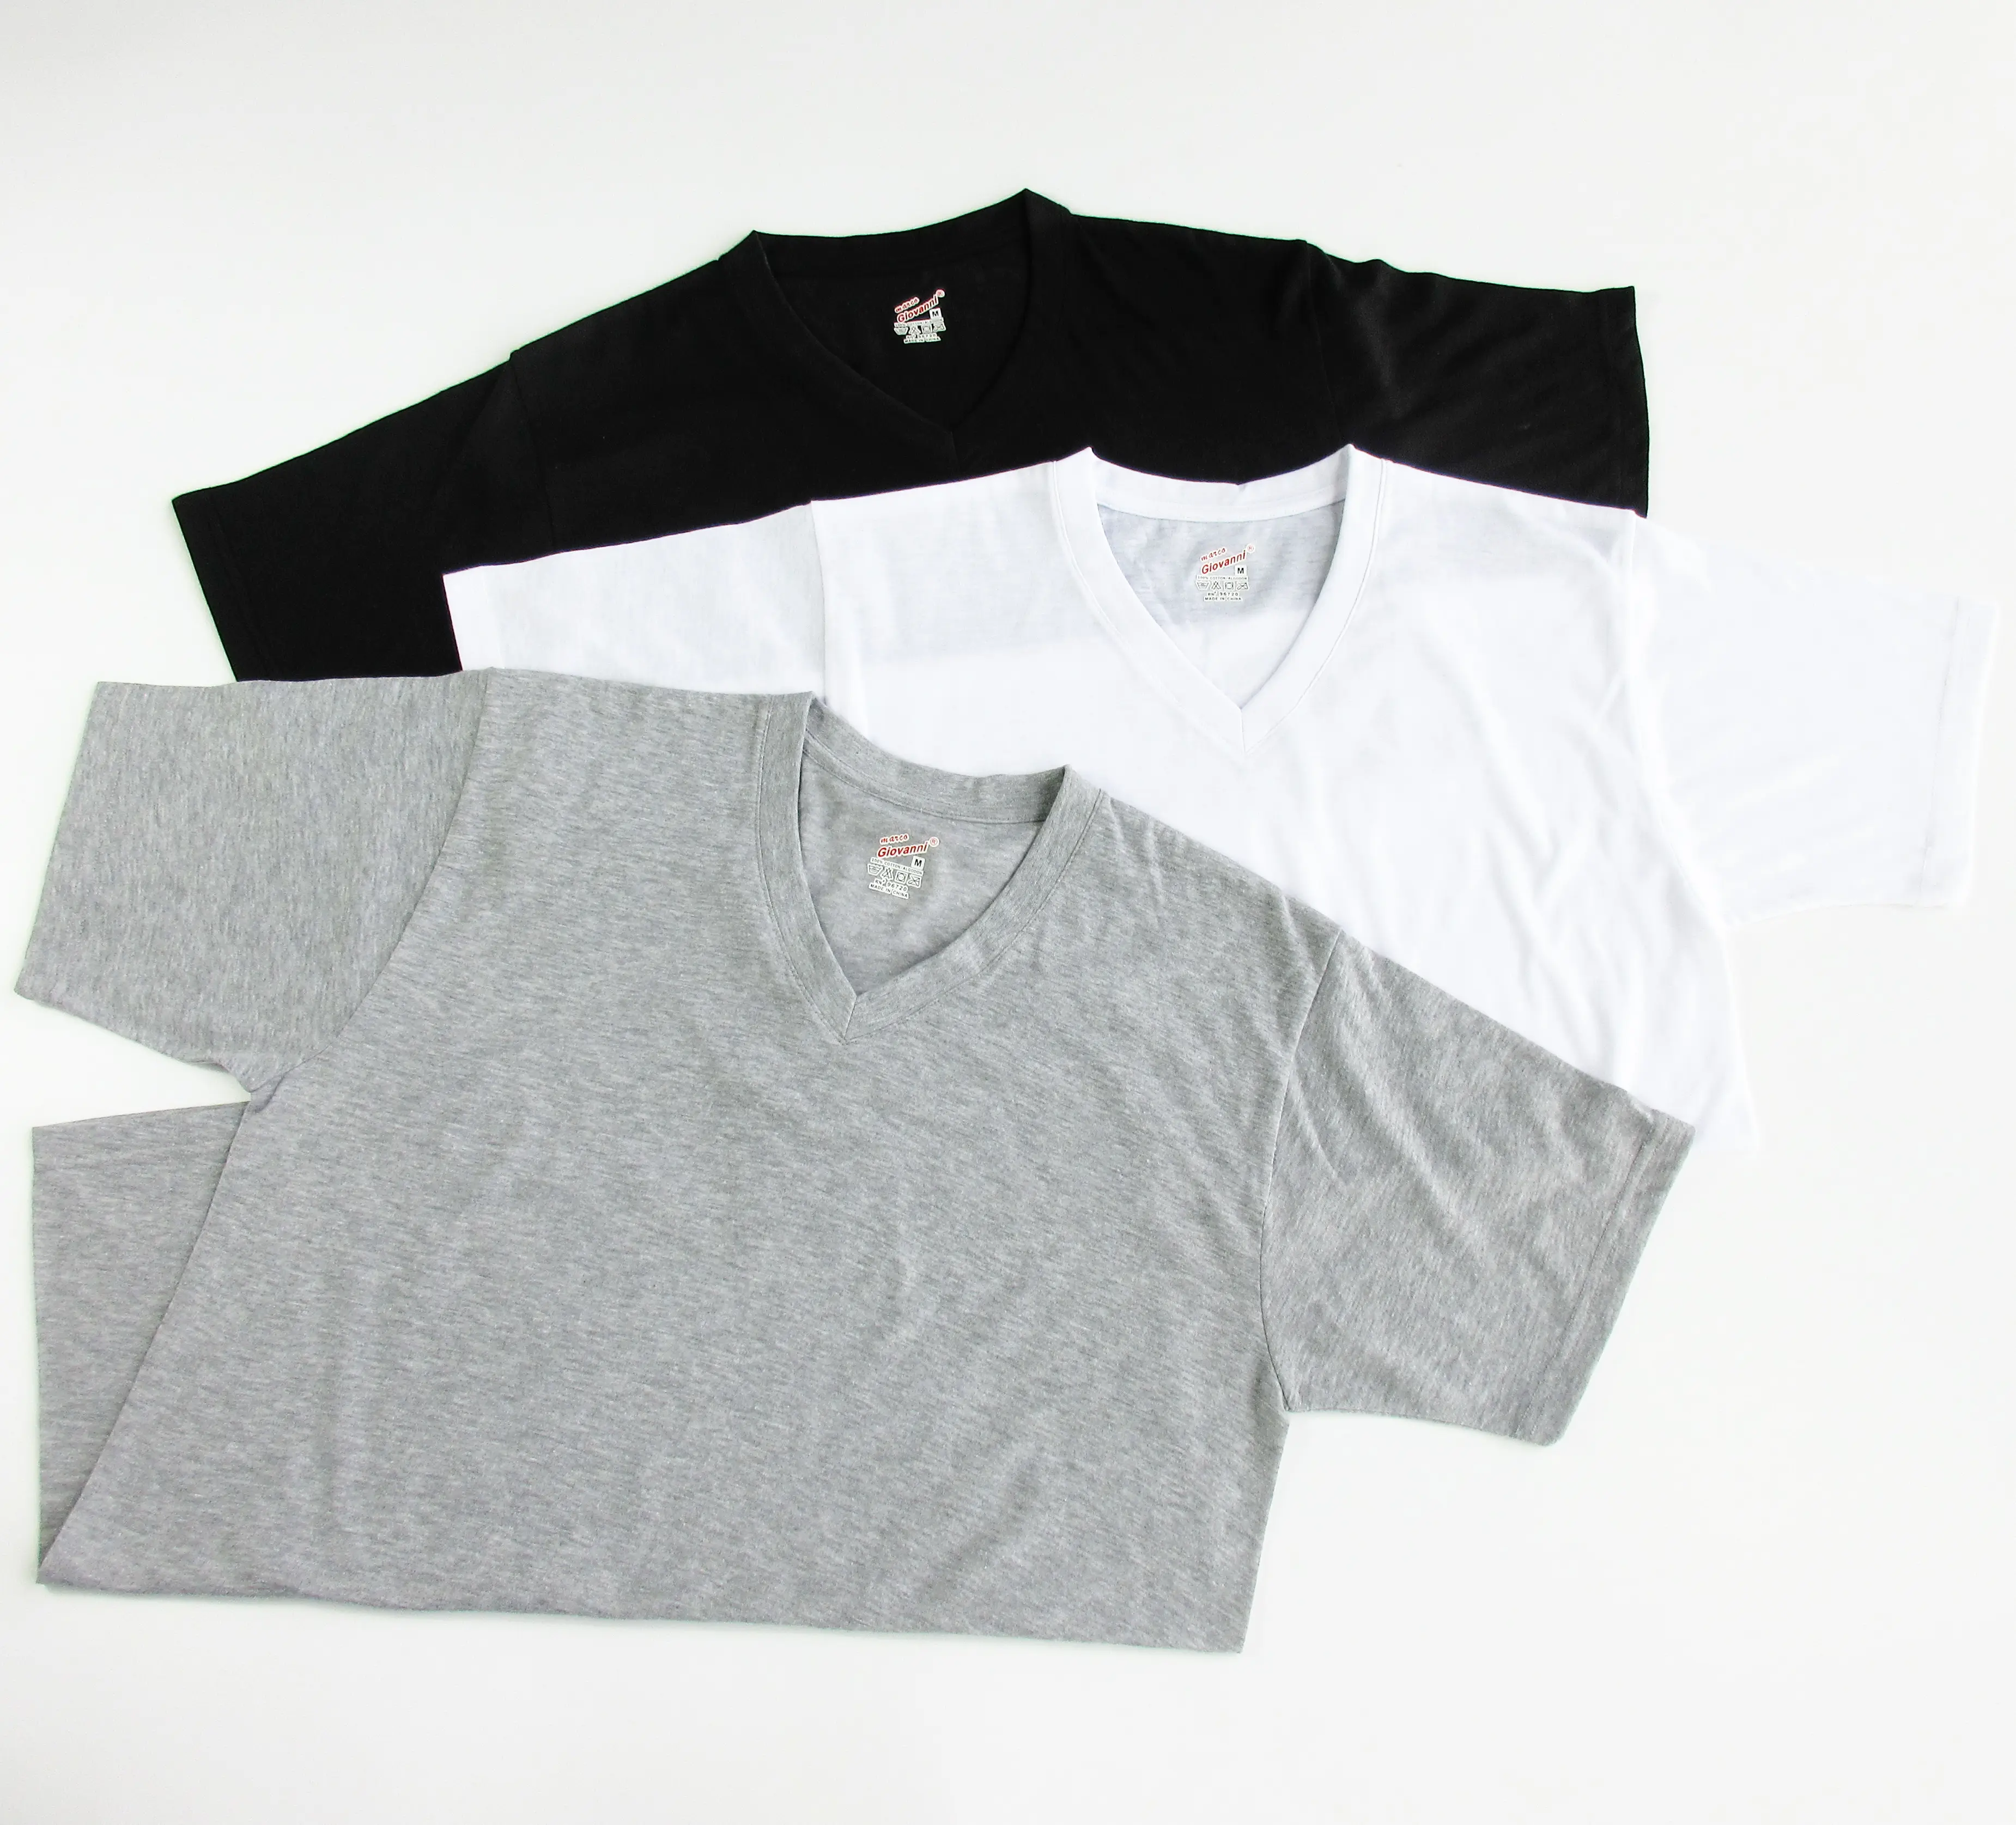 T-shirt homme, modèle 100% en coton 100% polyester, impression par sublimation, très bon marché, coloris noir et blanc